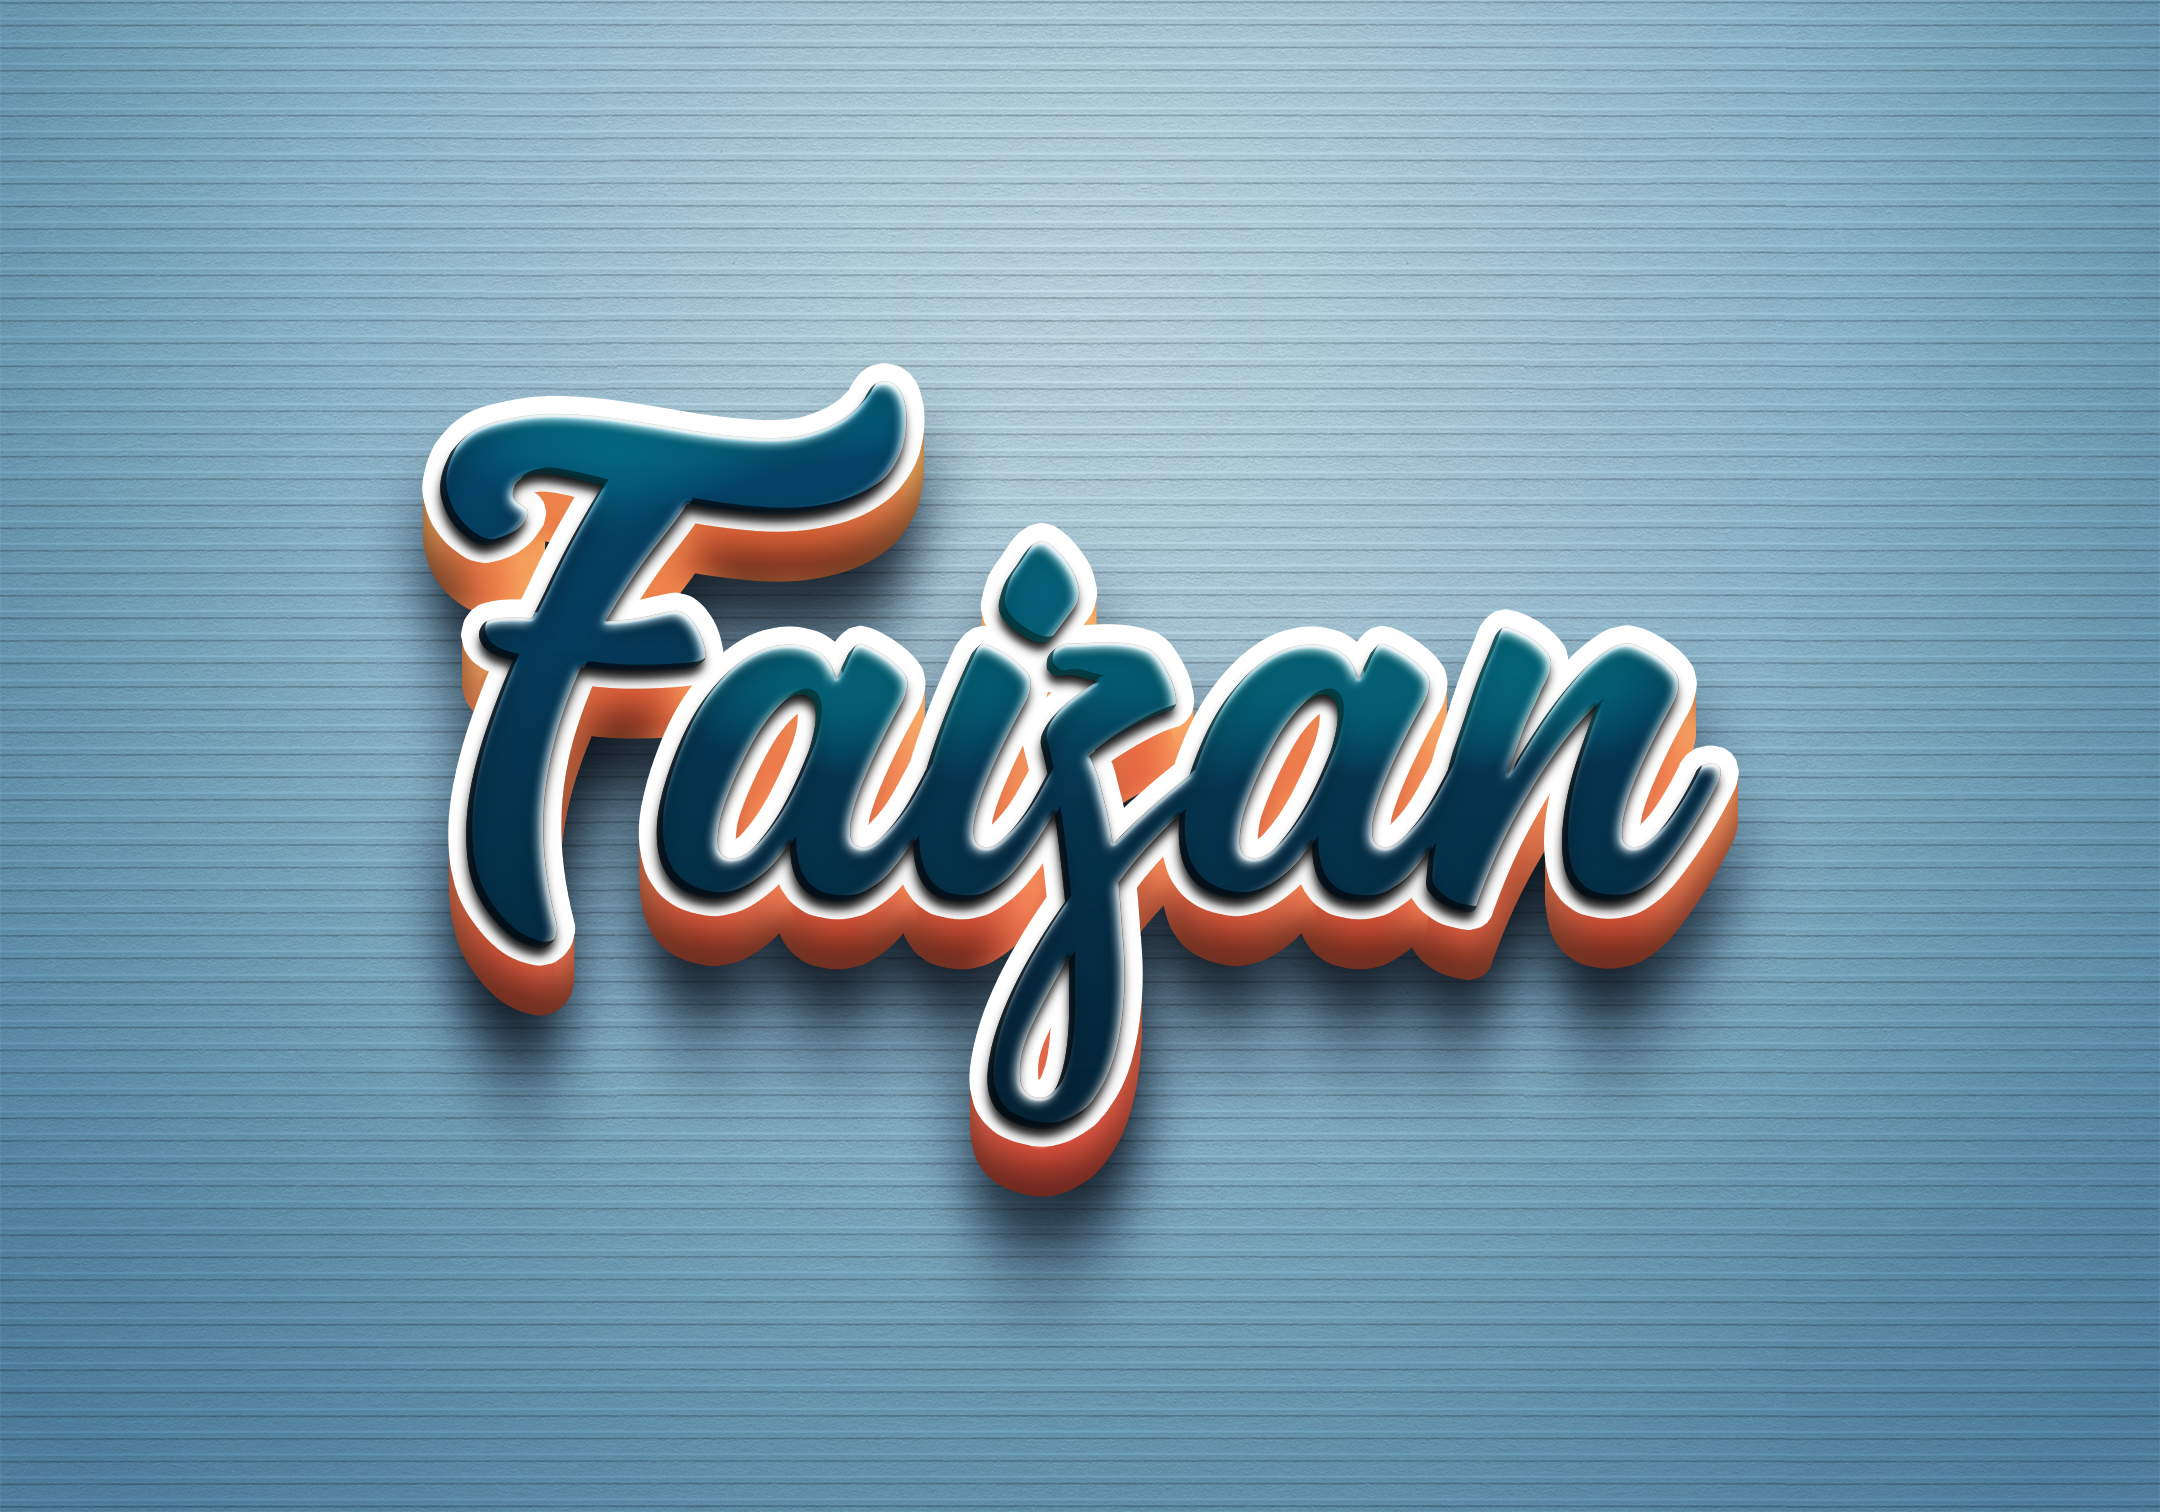 Faizan creation logo by Gaurav